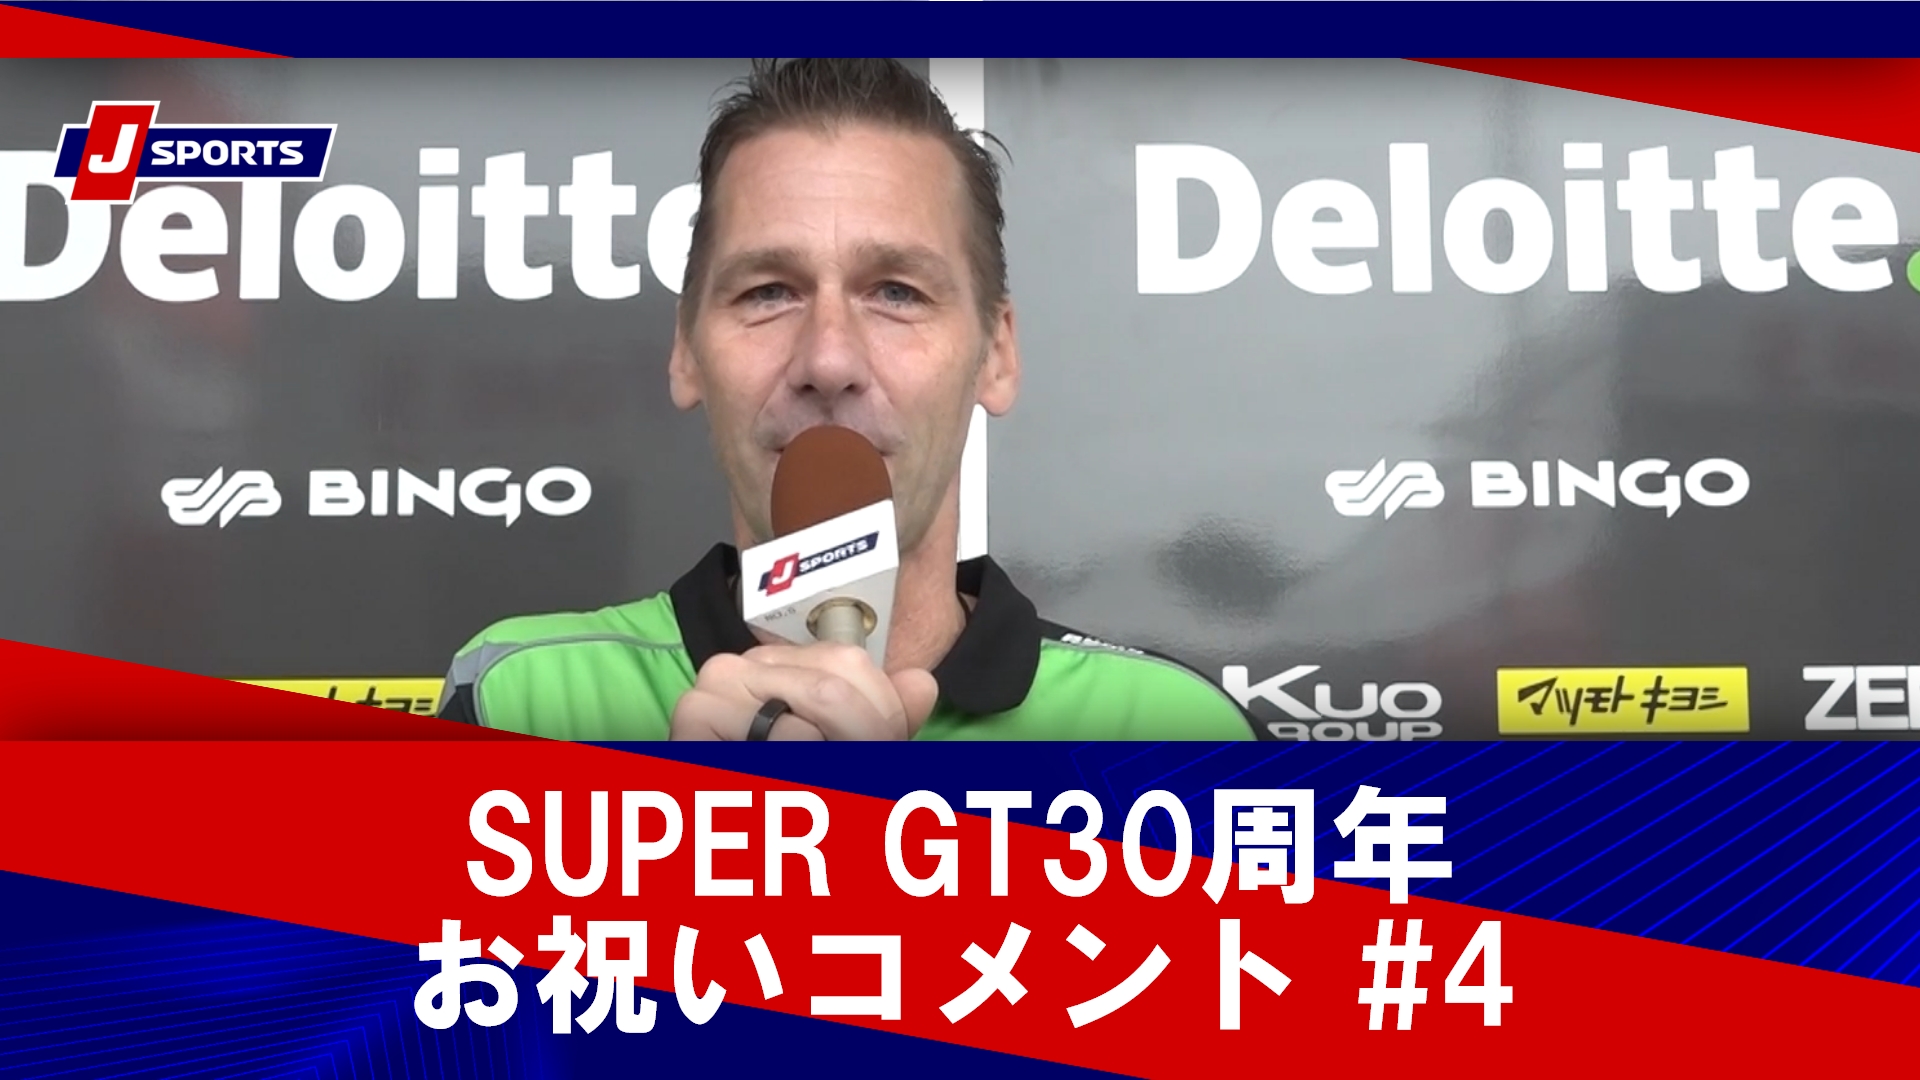 SUPER GT30周年お祝いコメント #4 金石勝智、ミハエル・クルム、本山哲、由良拓也